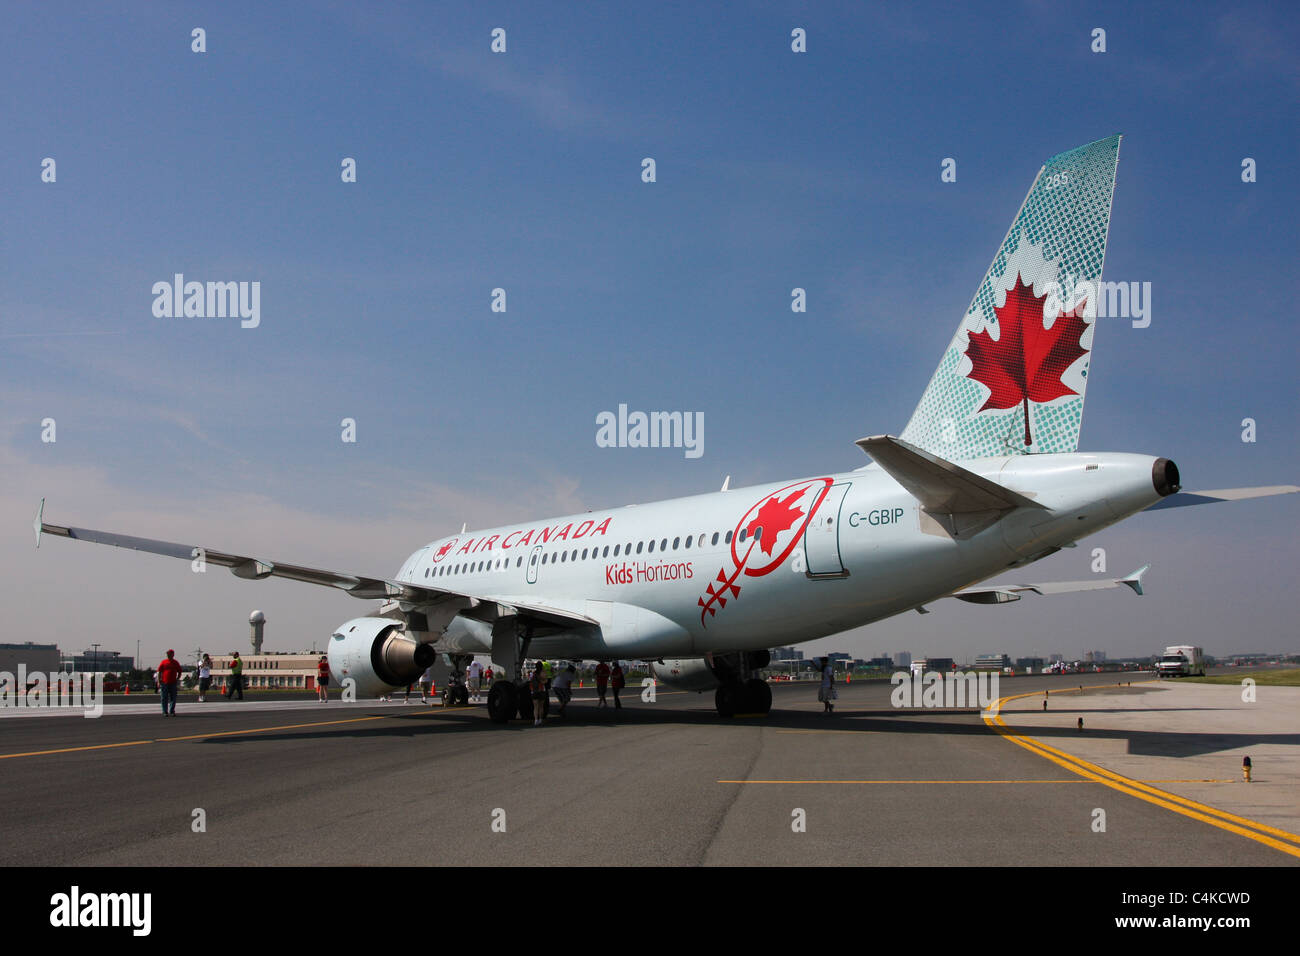 aircraft airplane rear airbus 'Air Canada' Stock Photo